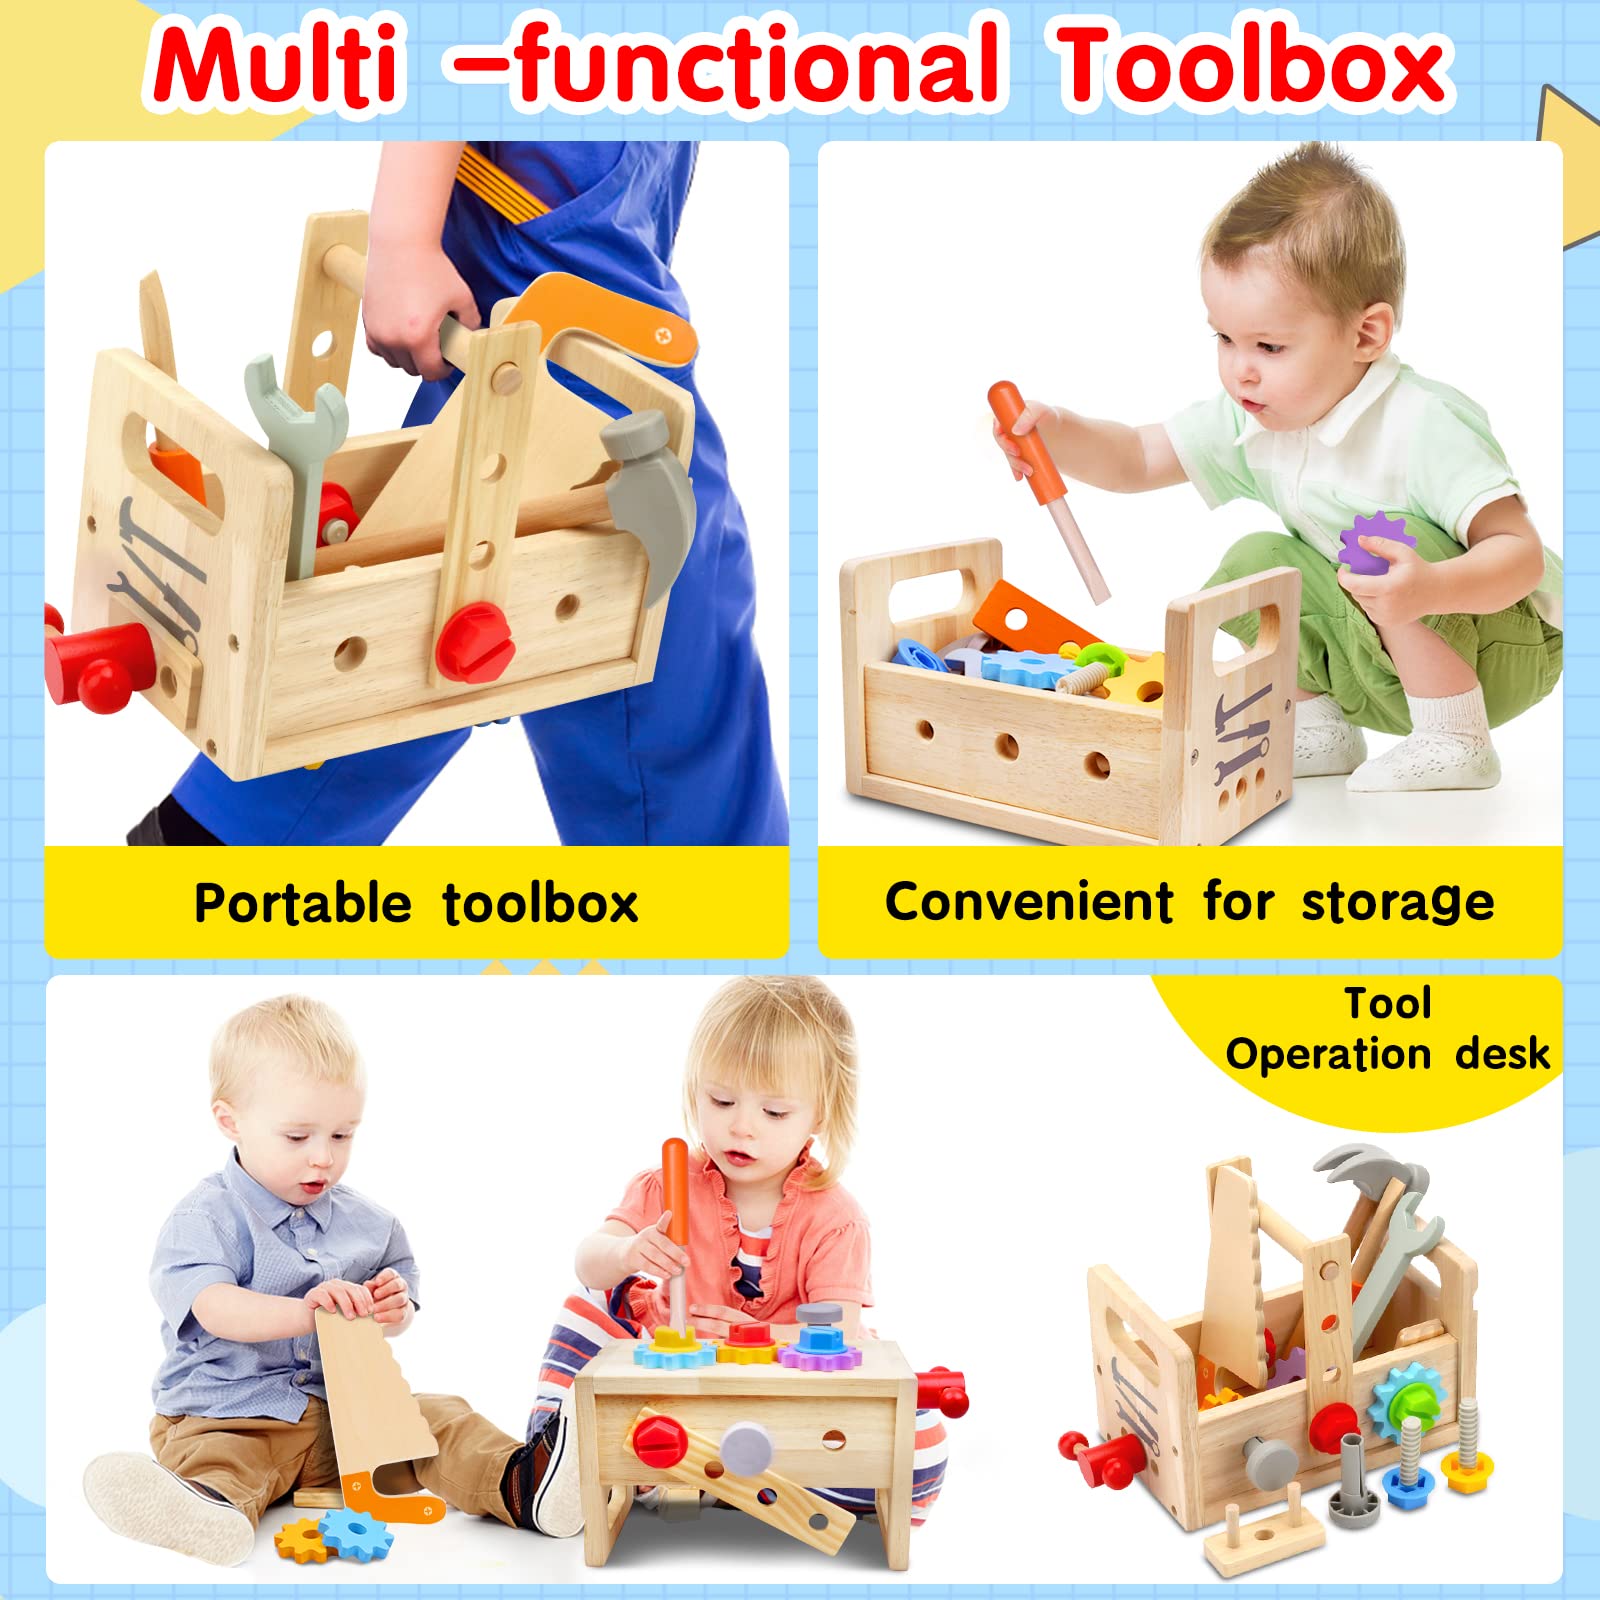 Juego de herramientas de madera para niños de 2, 3, 4, 5 años, 29 piezas,  juguetes educativos STEM para niños pequeños, juguetes Montessori para  niños